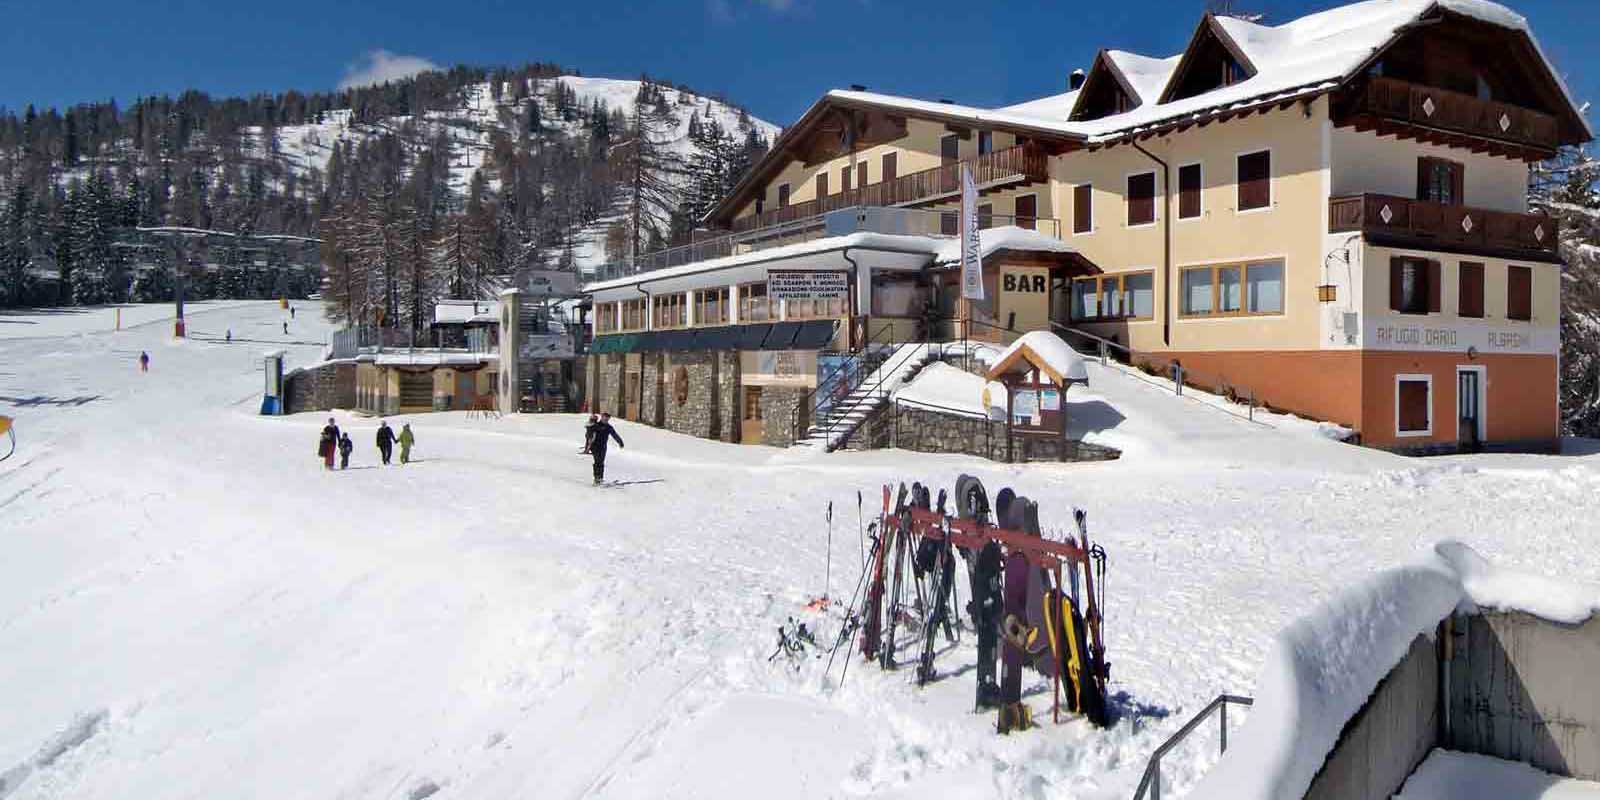 Noleggio sci Dario Albasini